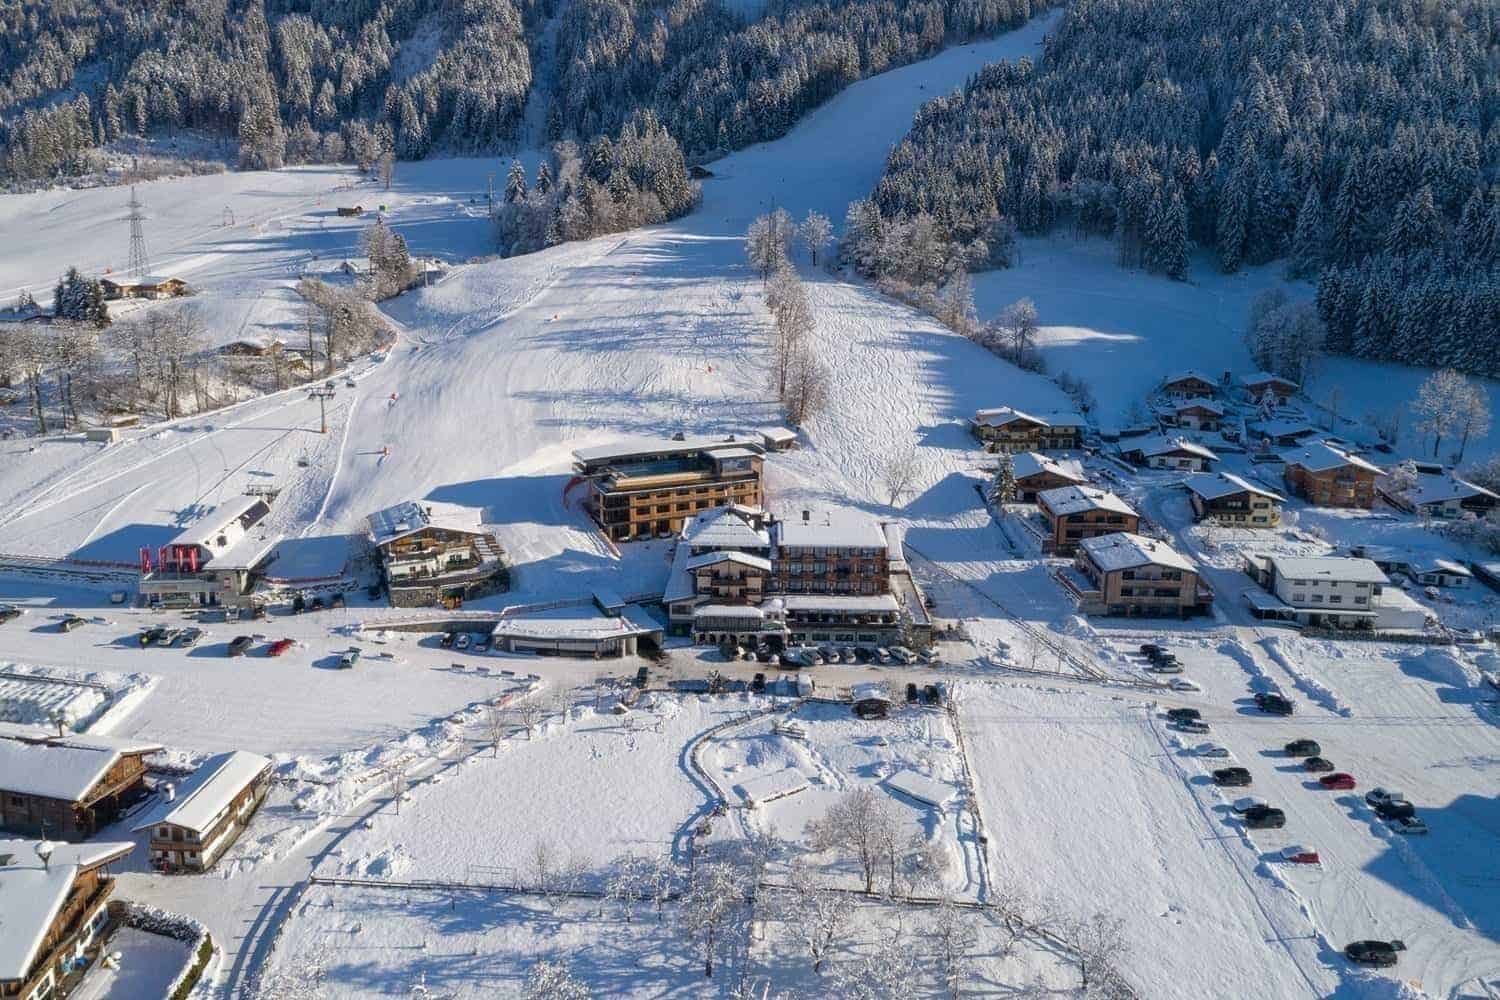 Hotel Penzinghof winter landscape